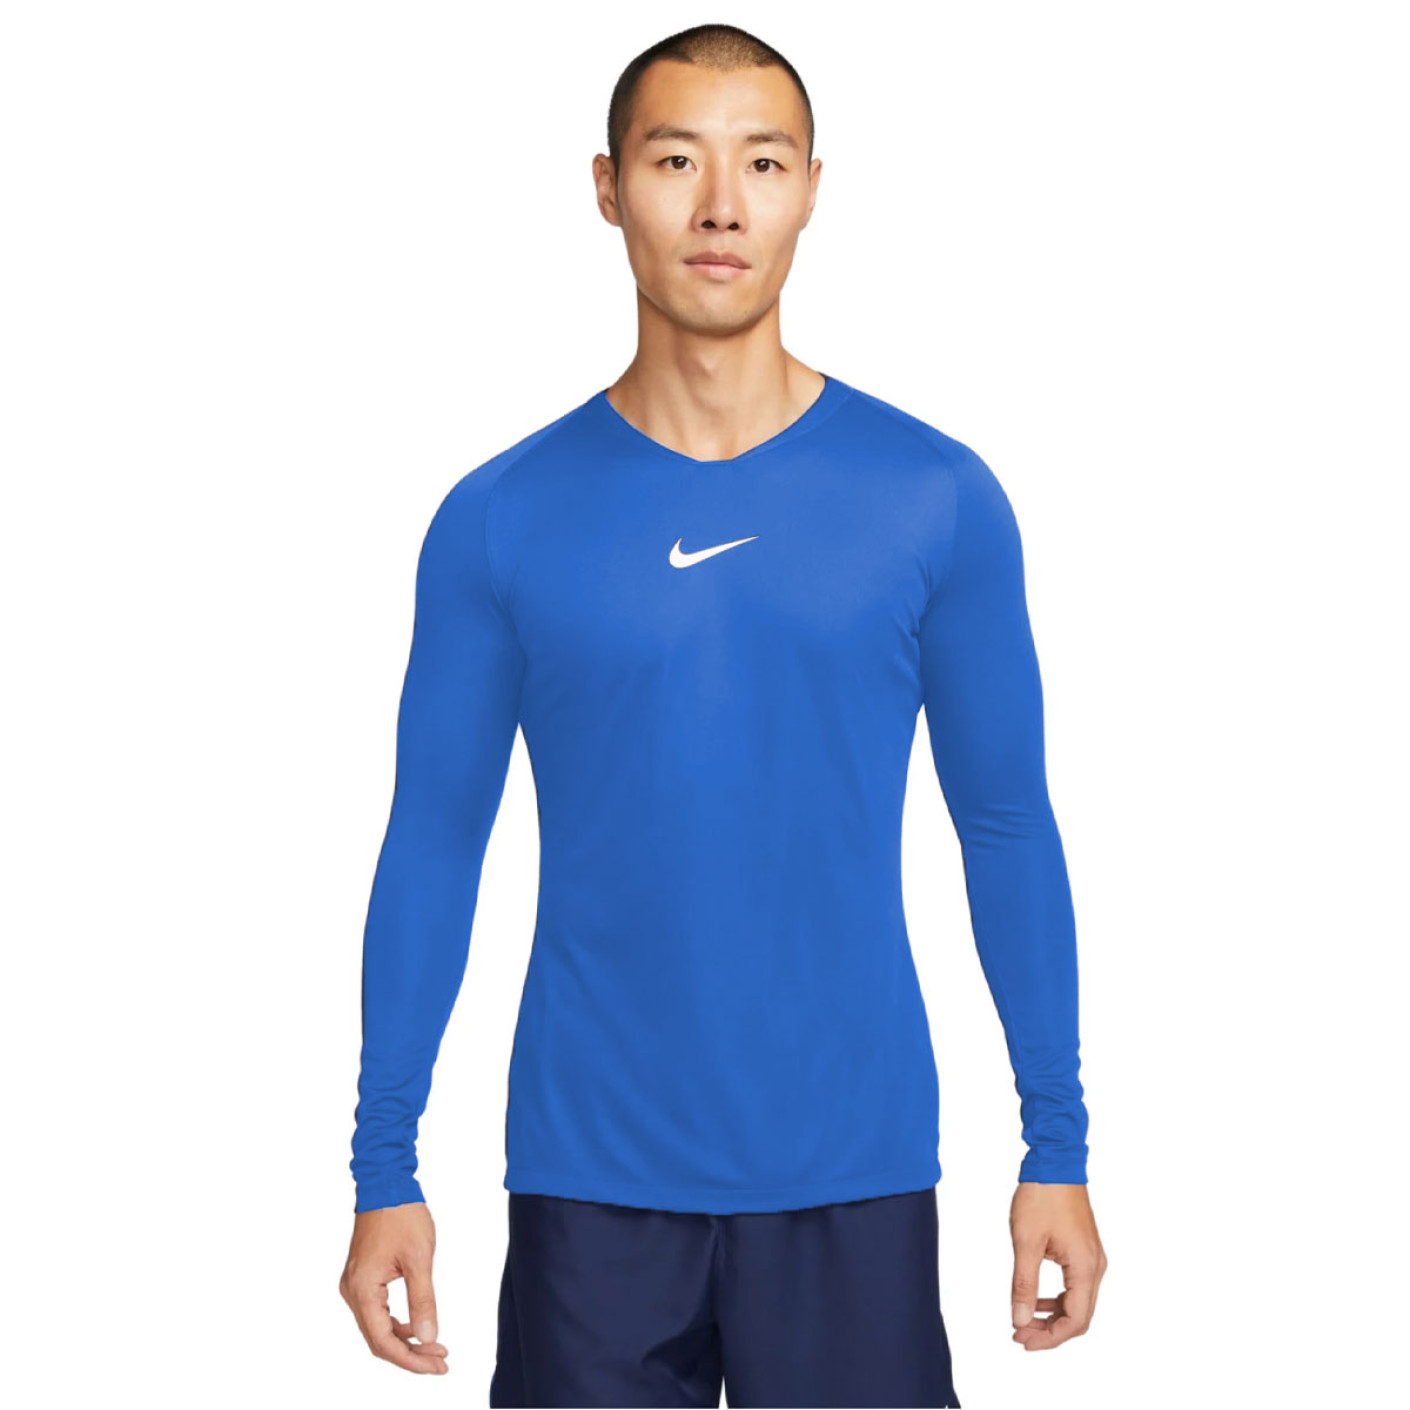 Nike Park Dri-Fit Ondershirt Lange Mouwen Blauw Wit